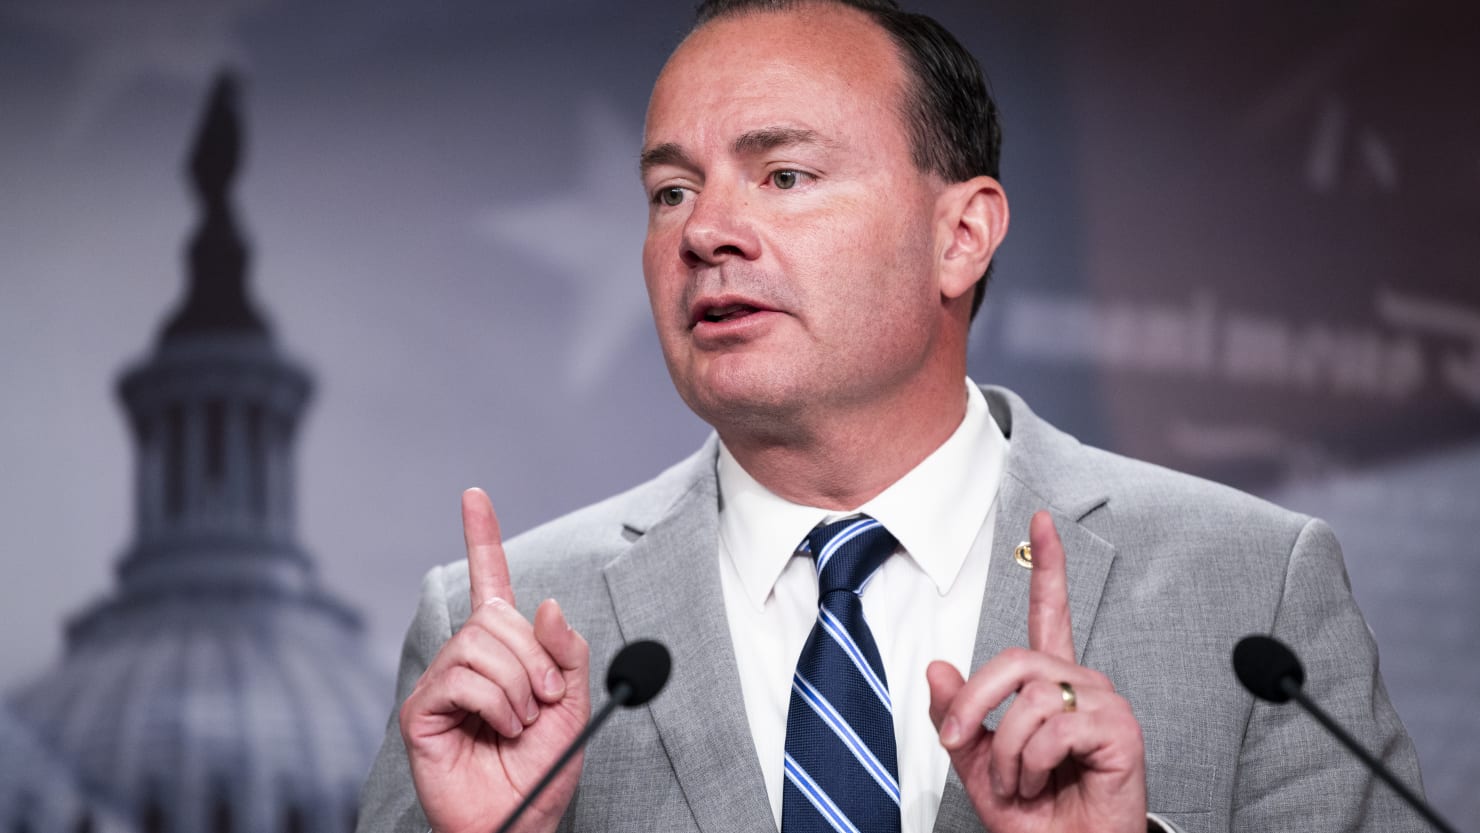 Sen. Mike Lee Insists He's Not a Trump 'Bootlicker' in Testy Utah Debate